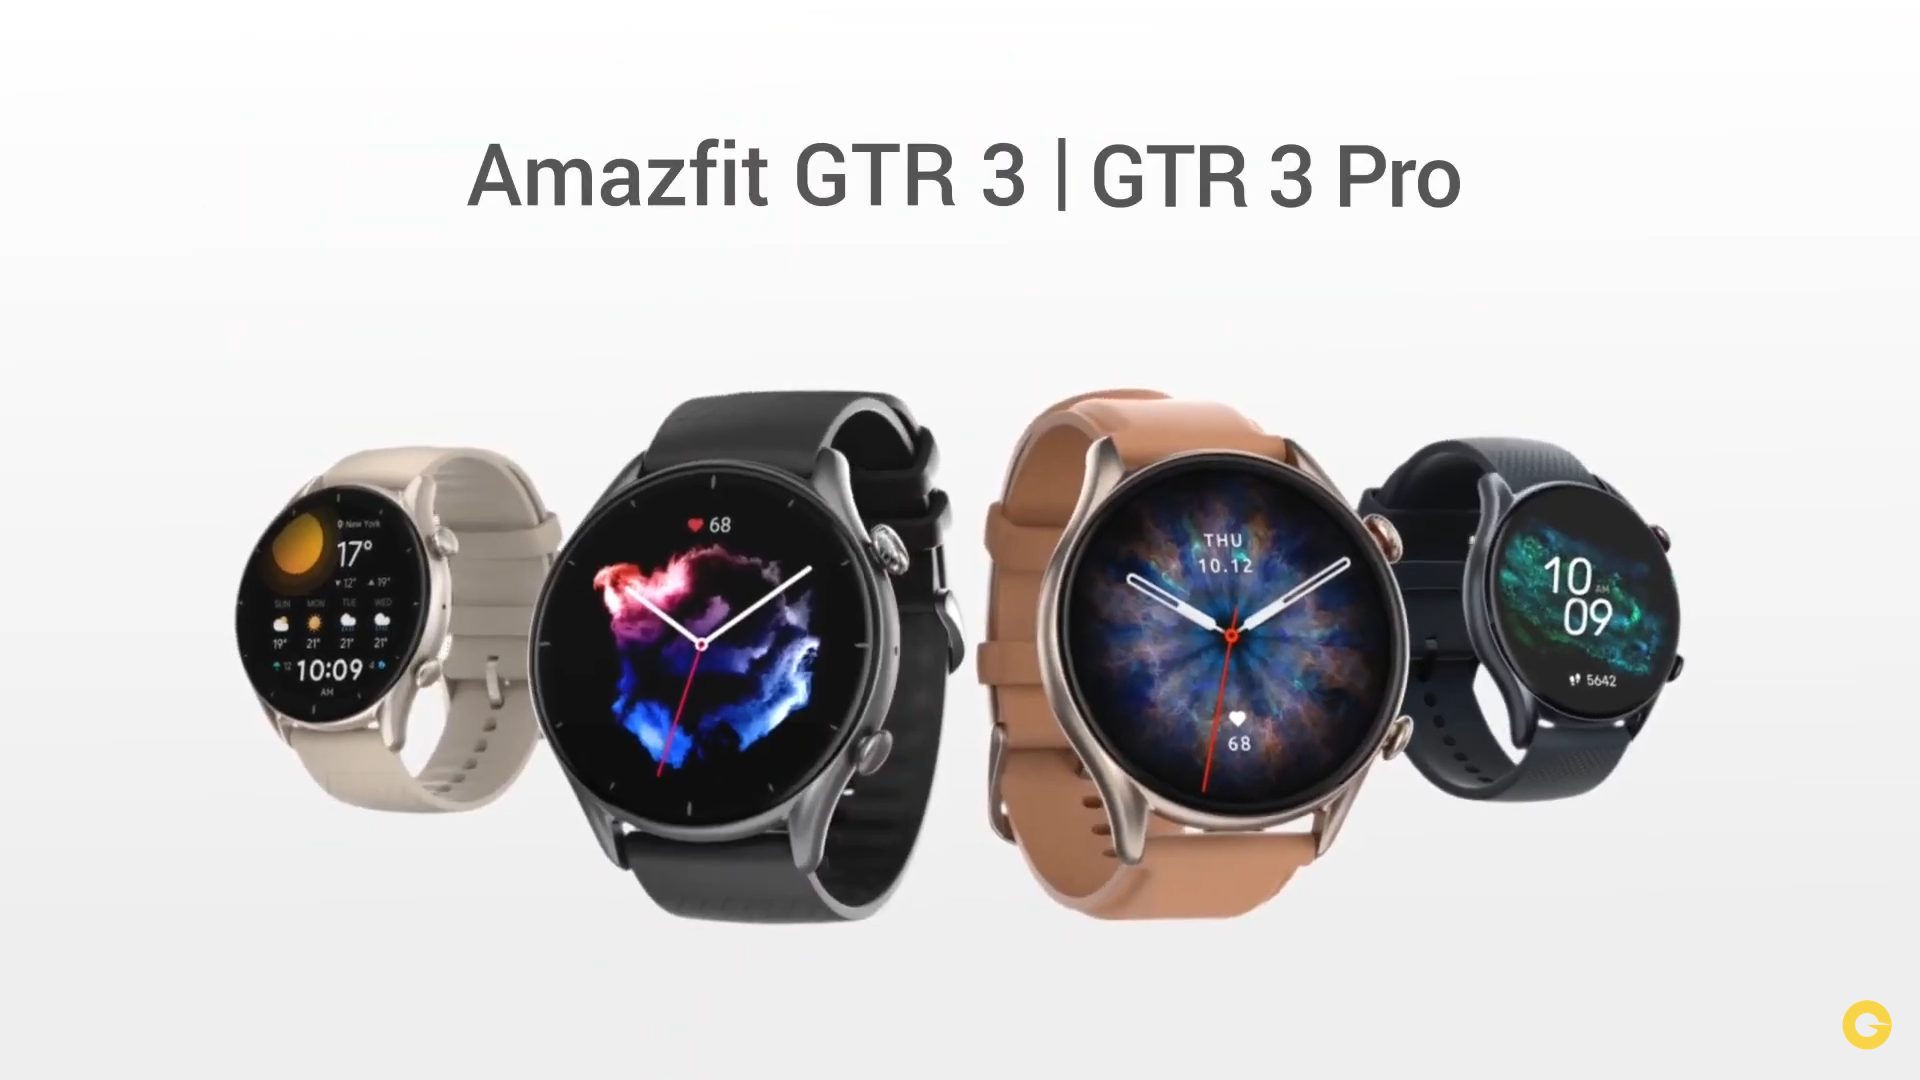 Amazfit GTR 3 Pro, Amazfit GTR 3, and Amazfit GTS 3 With Zepp OS